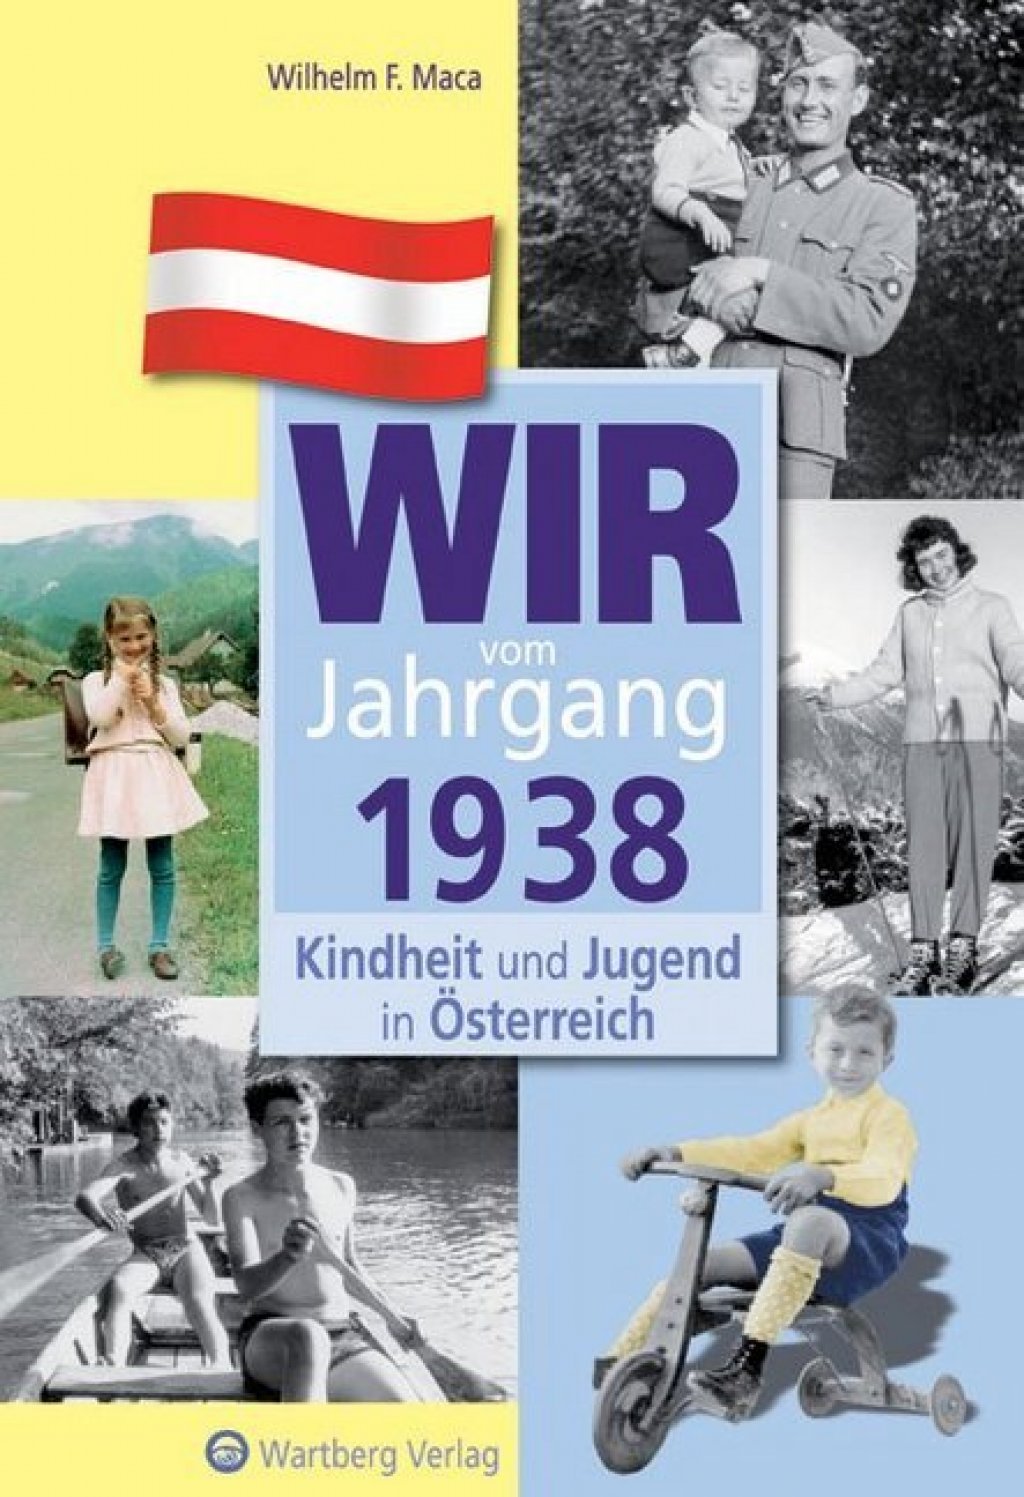 Wir vom Jahrgang 1938 - Kindheit und Jugend in Österreich